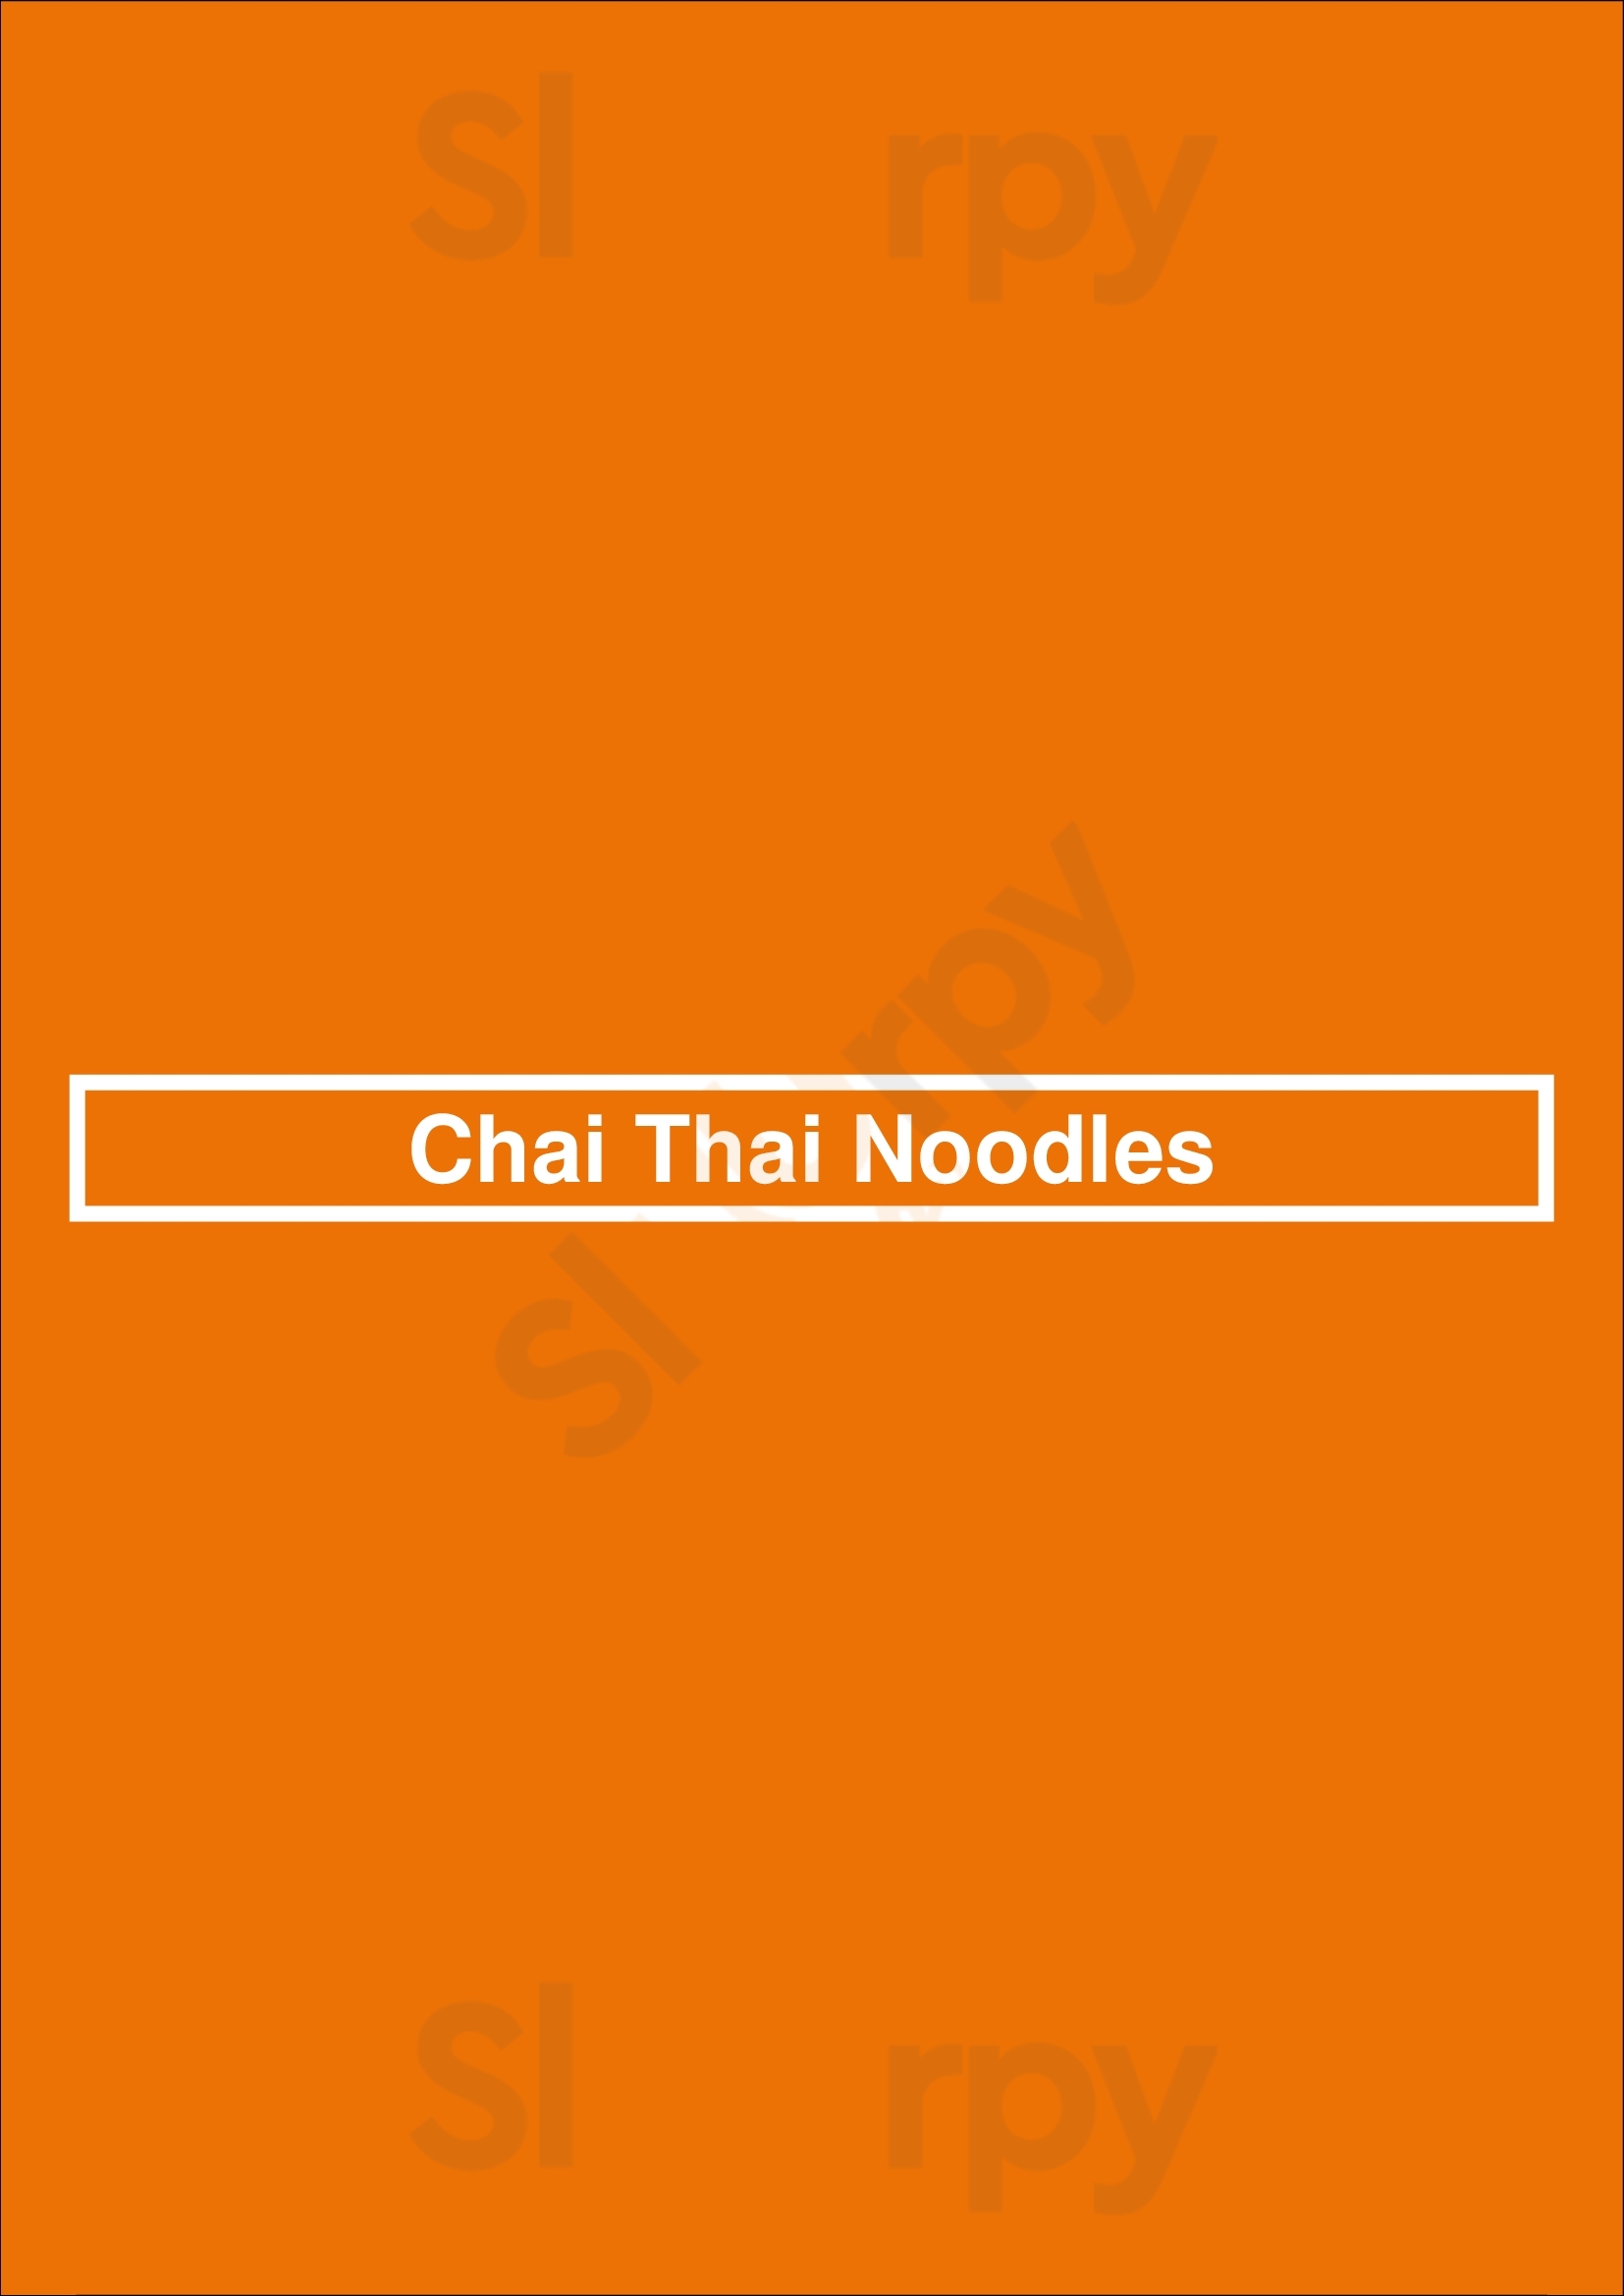 Chai Thai Noodles Oakland Menu - 1